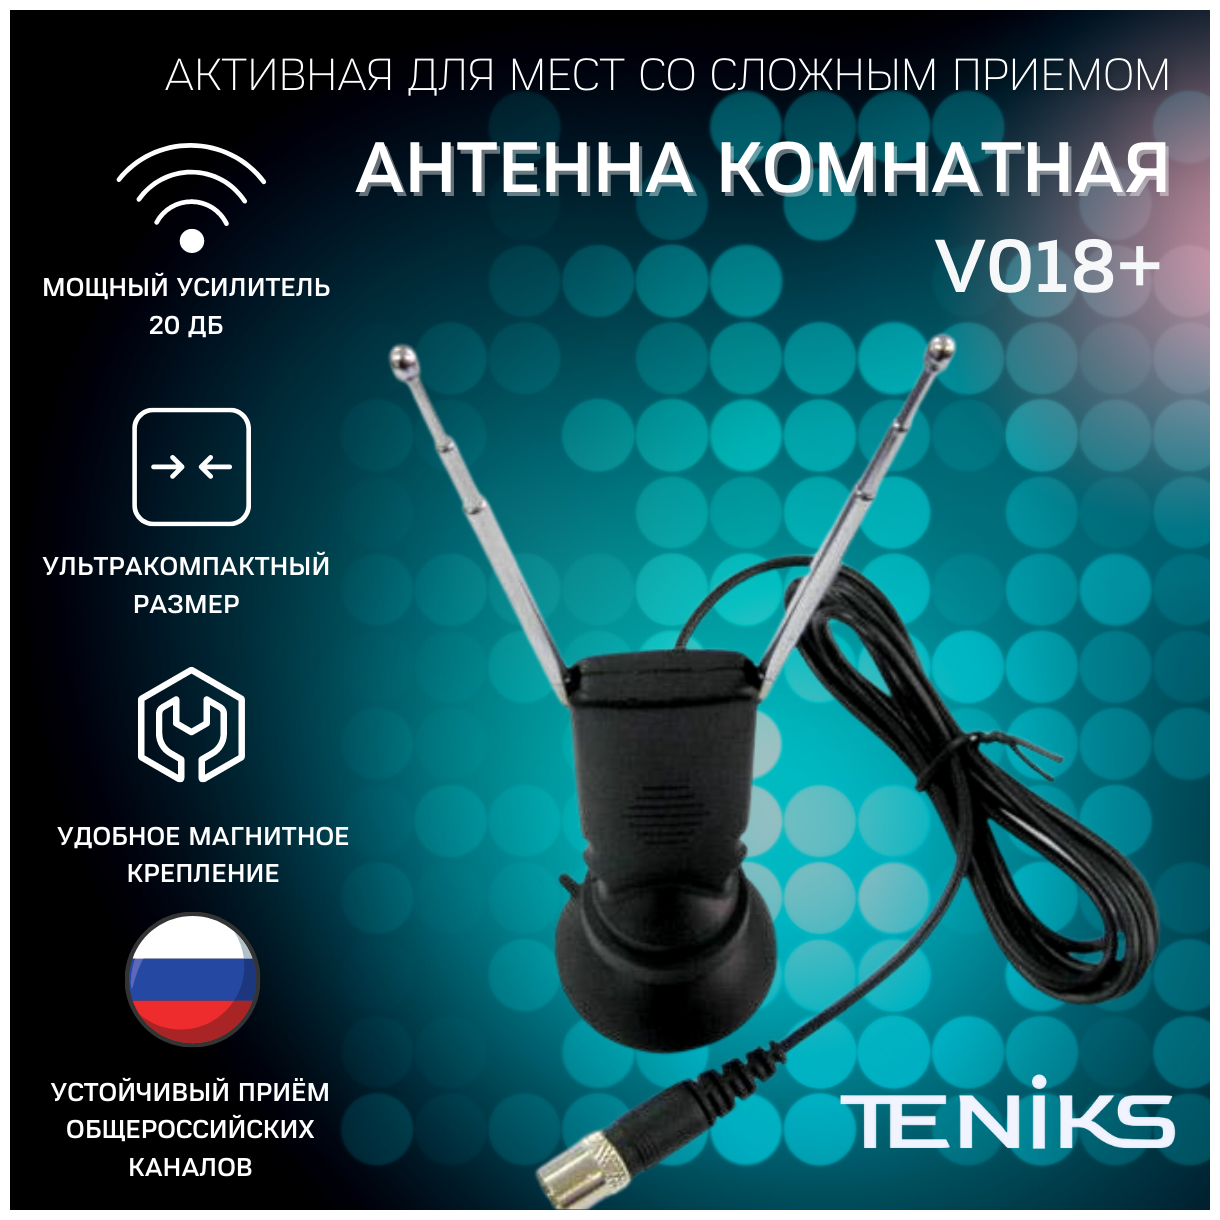 Антенна комнатная DVB-T2 Teniks V018+ активная, КУ до 23 dB, длина кабеля 2 метра